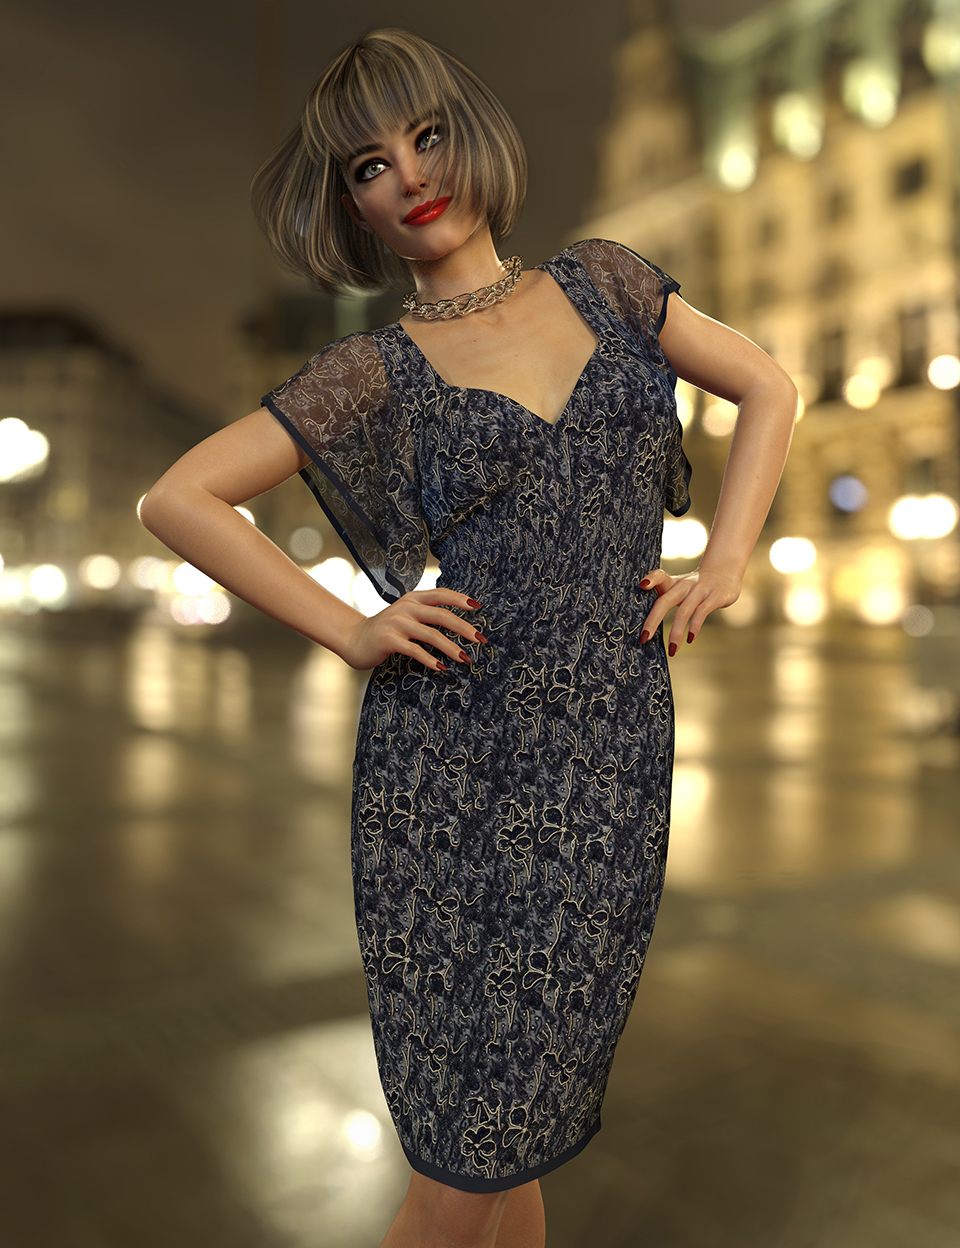 dForce Zelda Dress for Genesis 8 Females by: Nelmi, 3D Models by Daz 3D